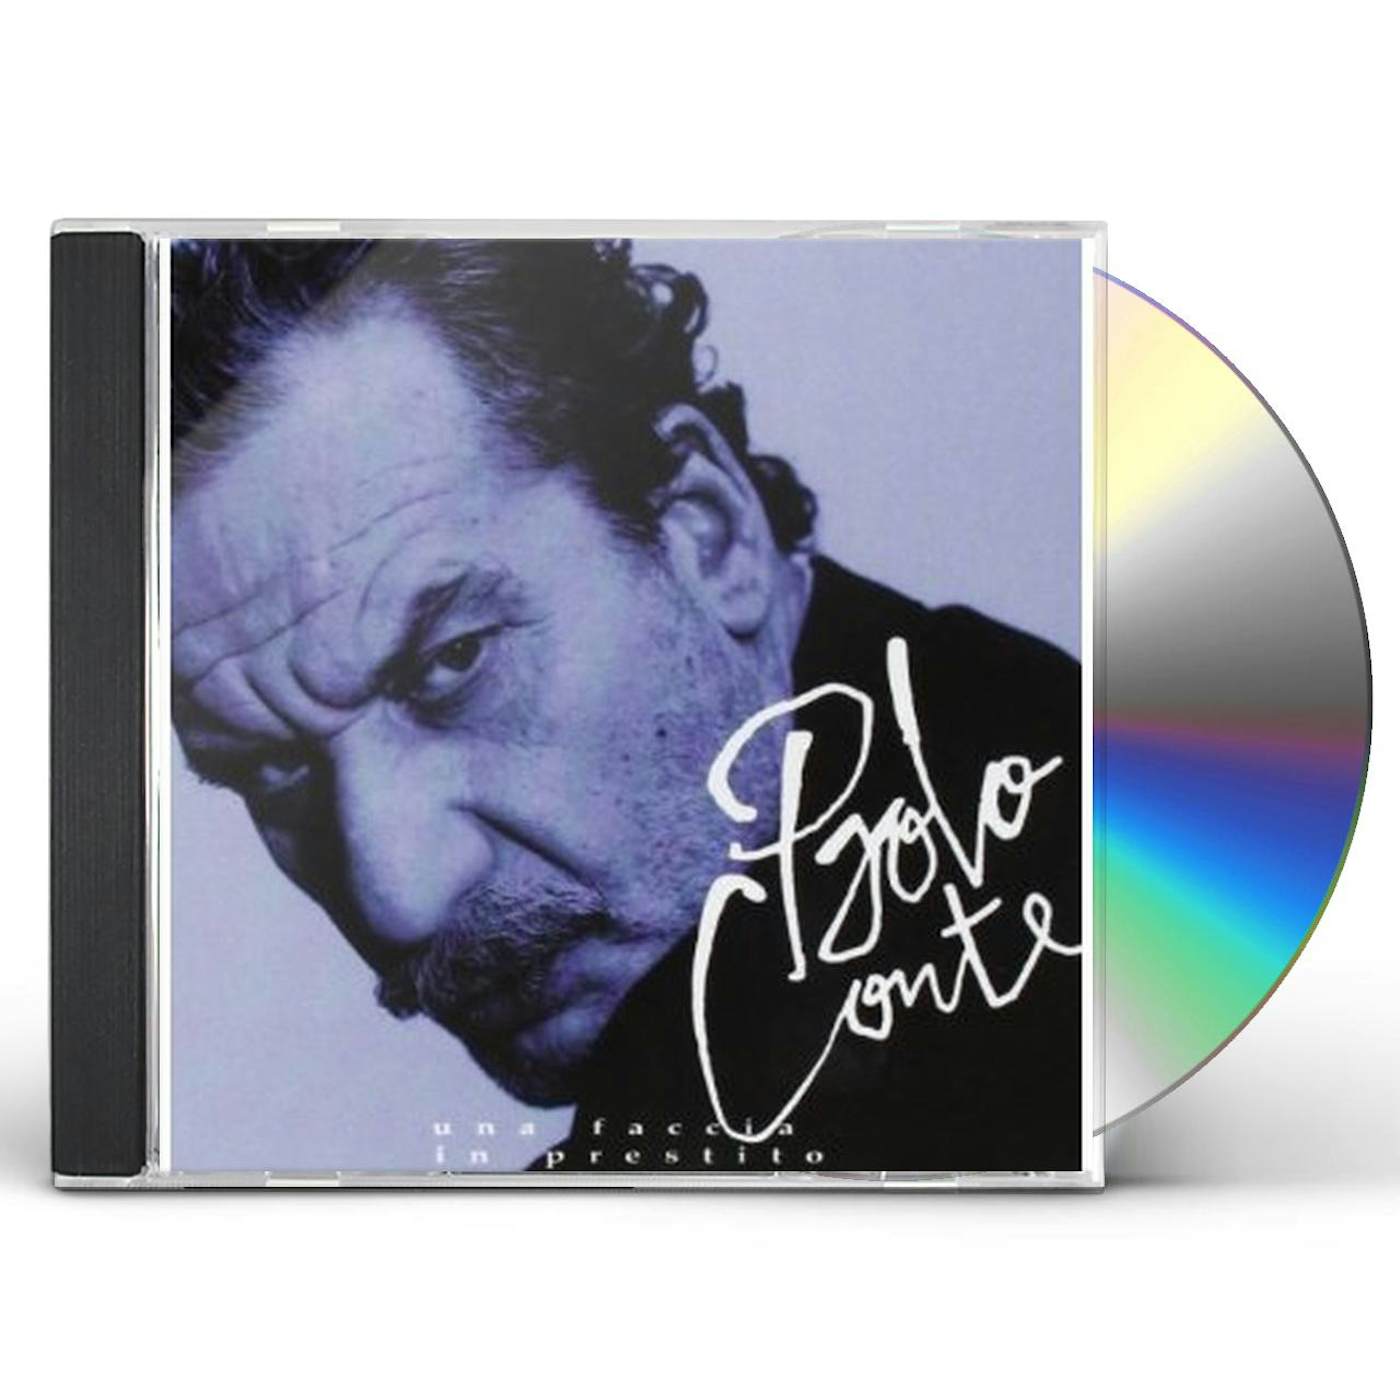 Paolo Conte UNA FACCIA IN PRESTITO CD